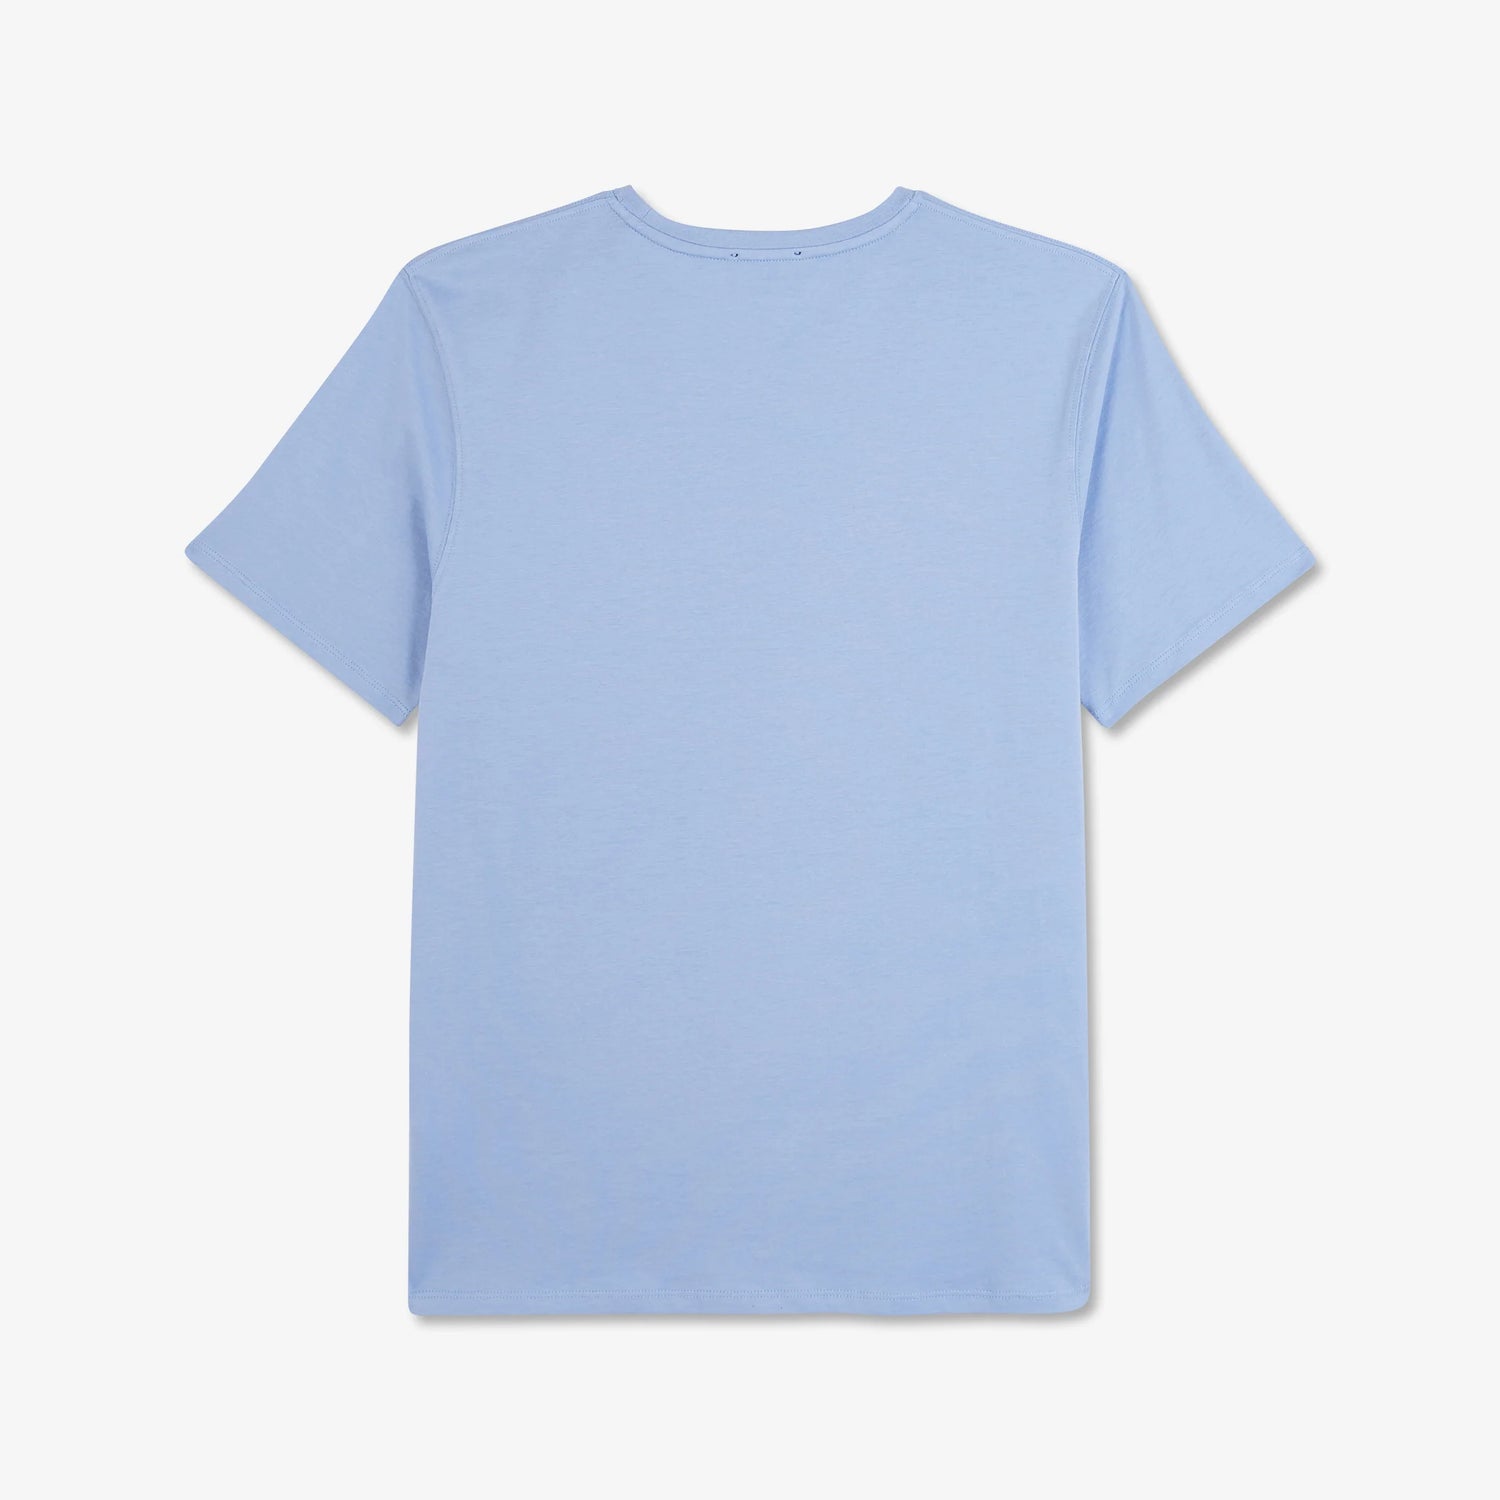 v-neck-light-blue-light-pima-cotton-t-shirt_ppknitce0008_blm3_04